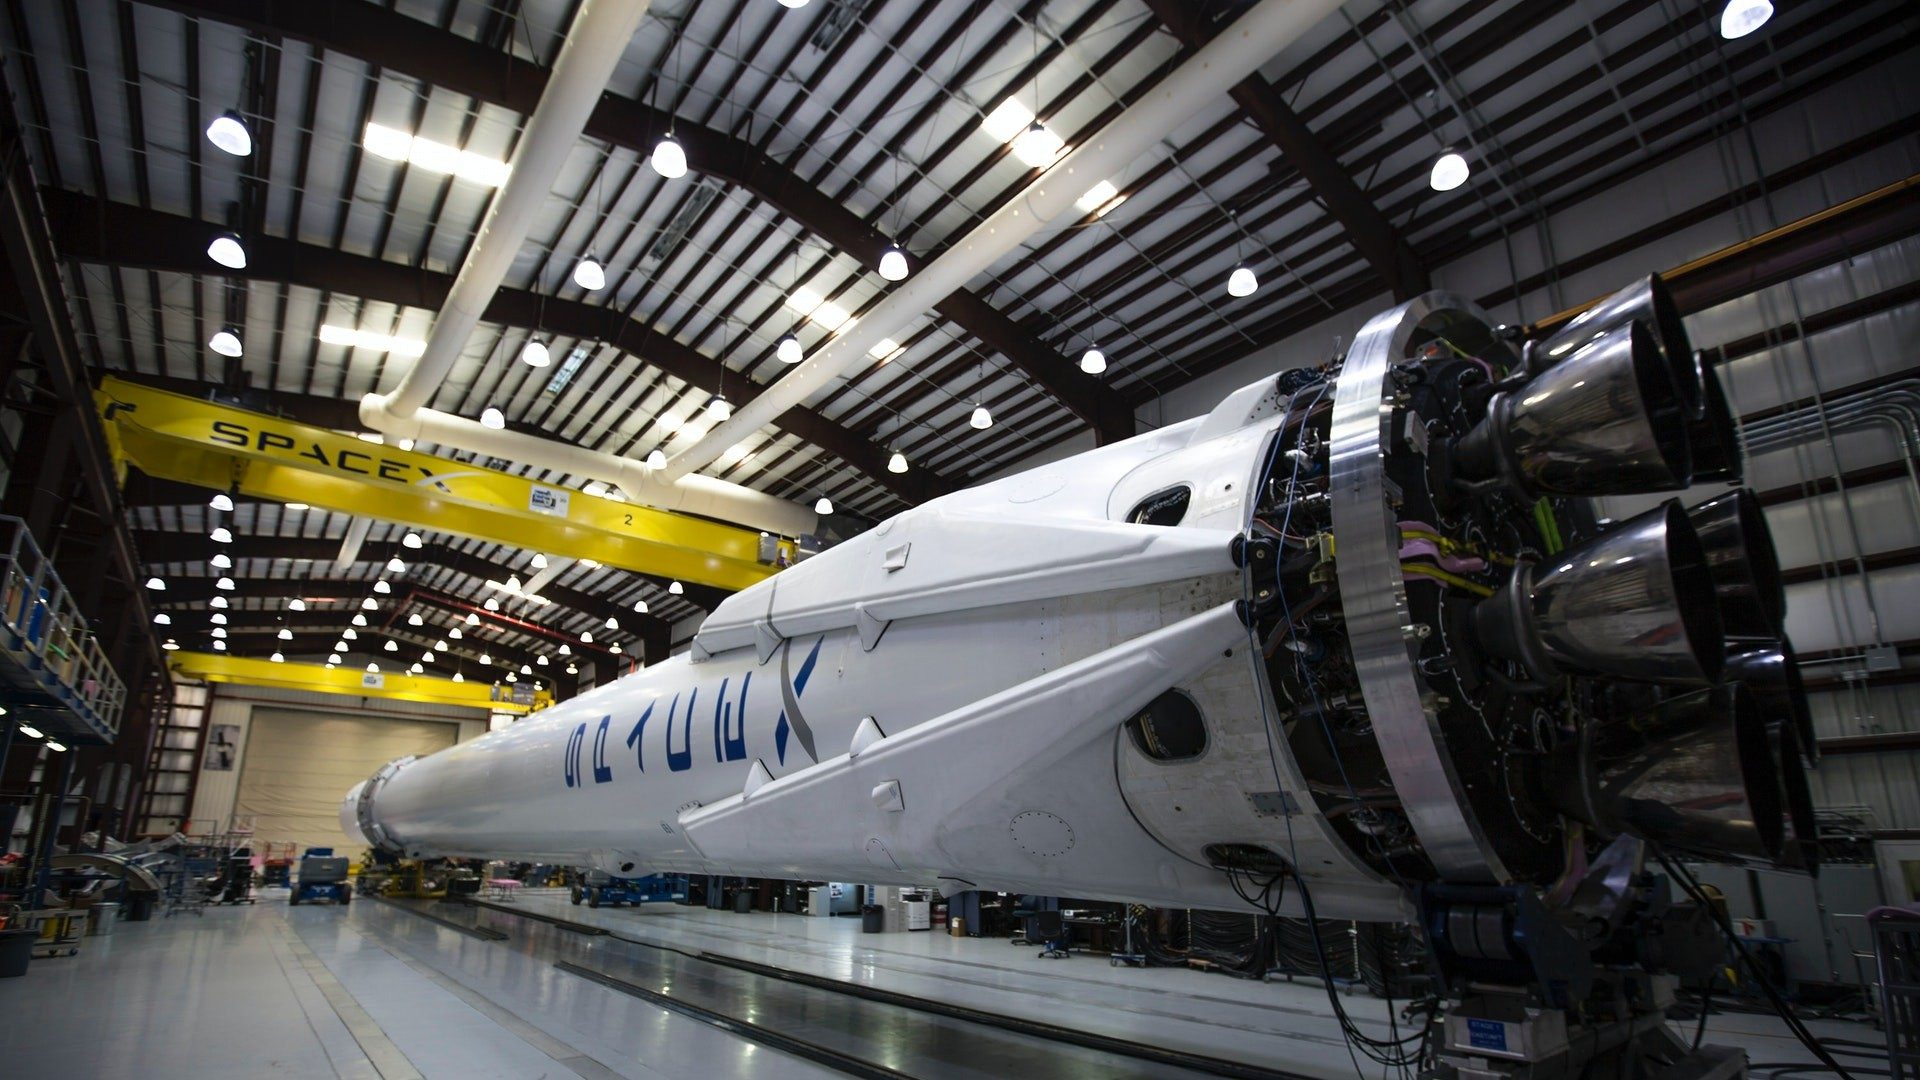 Rakete von SpaceX in einer großen Halle liegend.